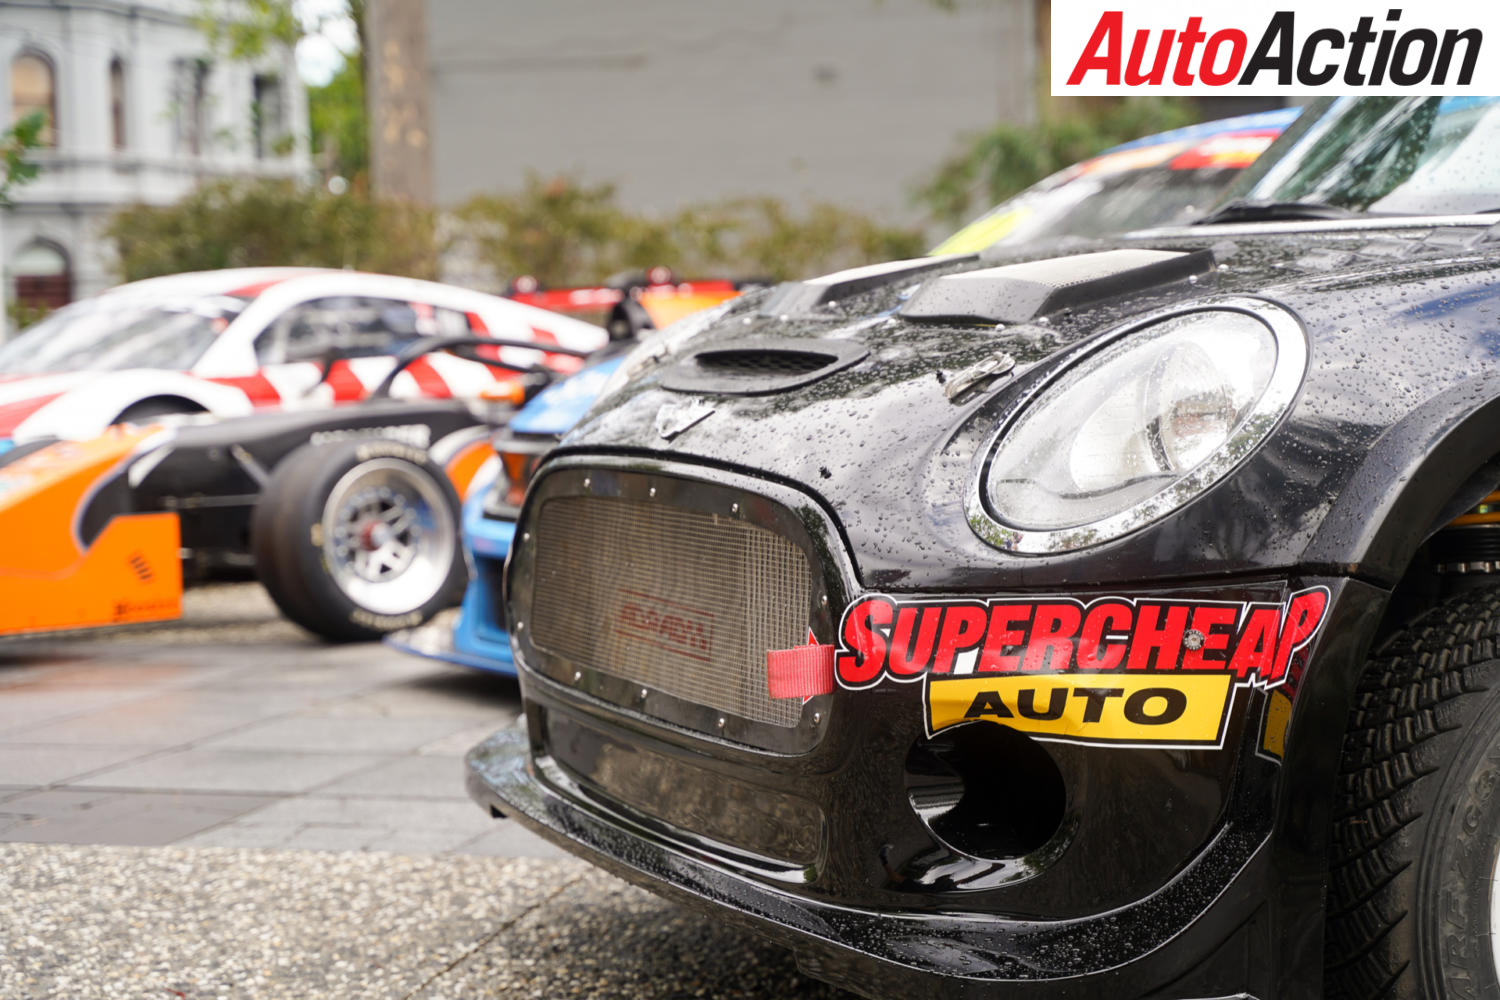 Motorsport Australia announces partnership with Supercheap Auto - Image: Supplied